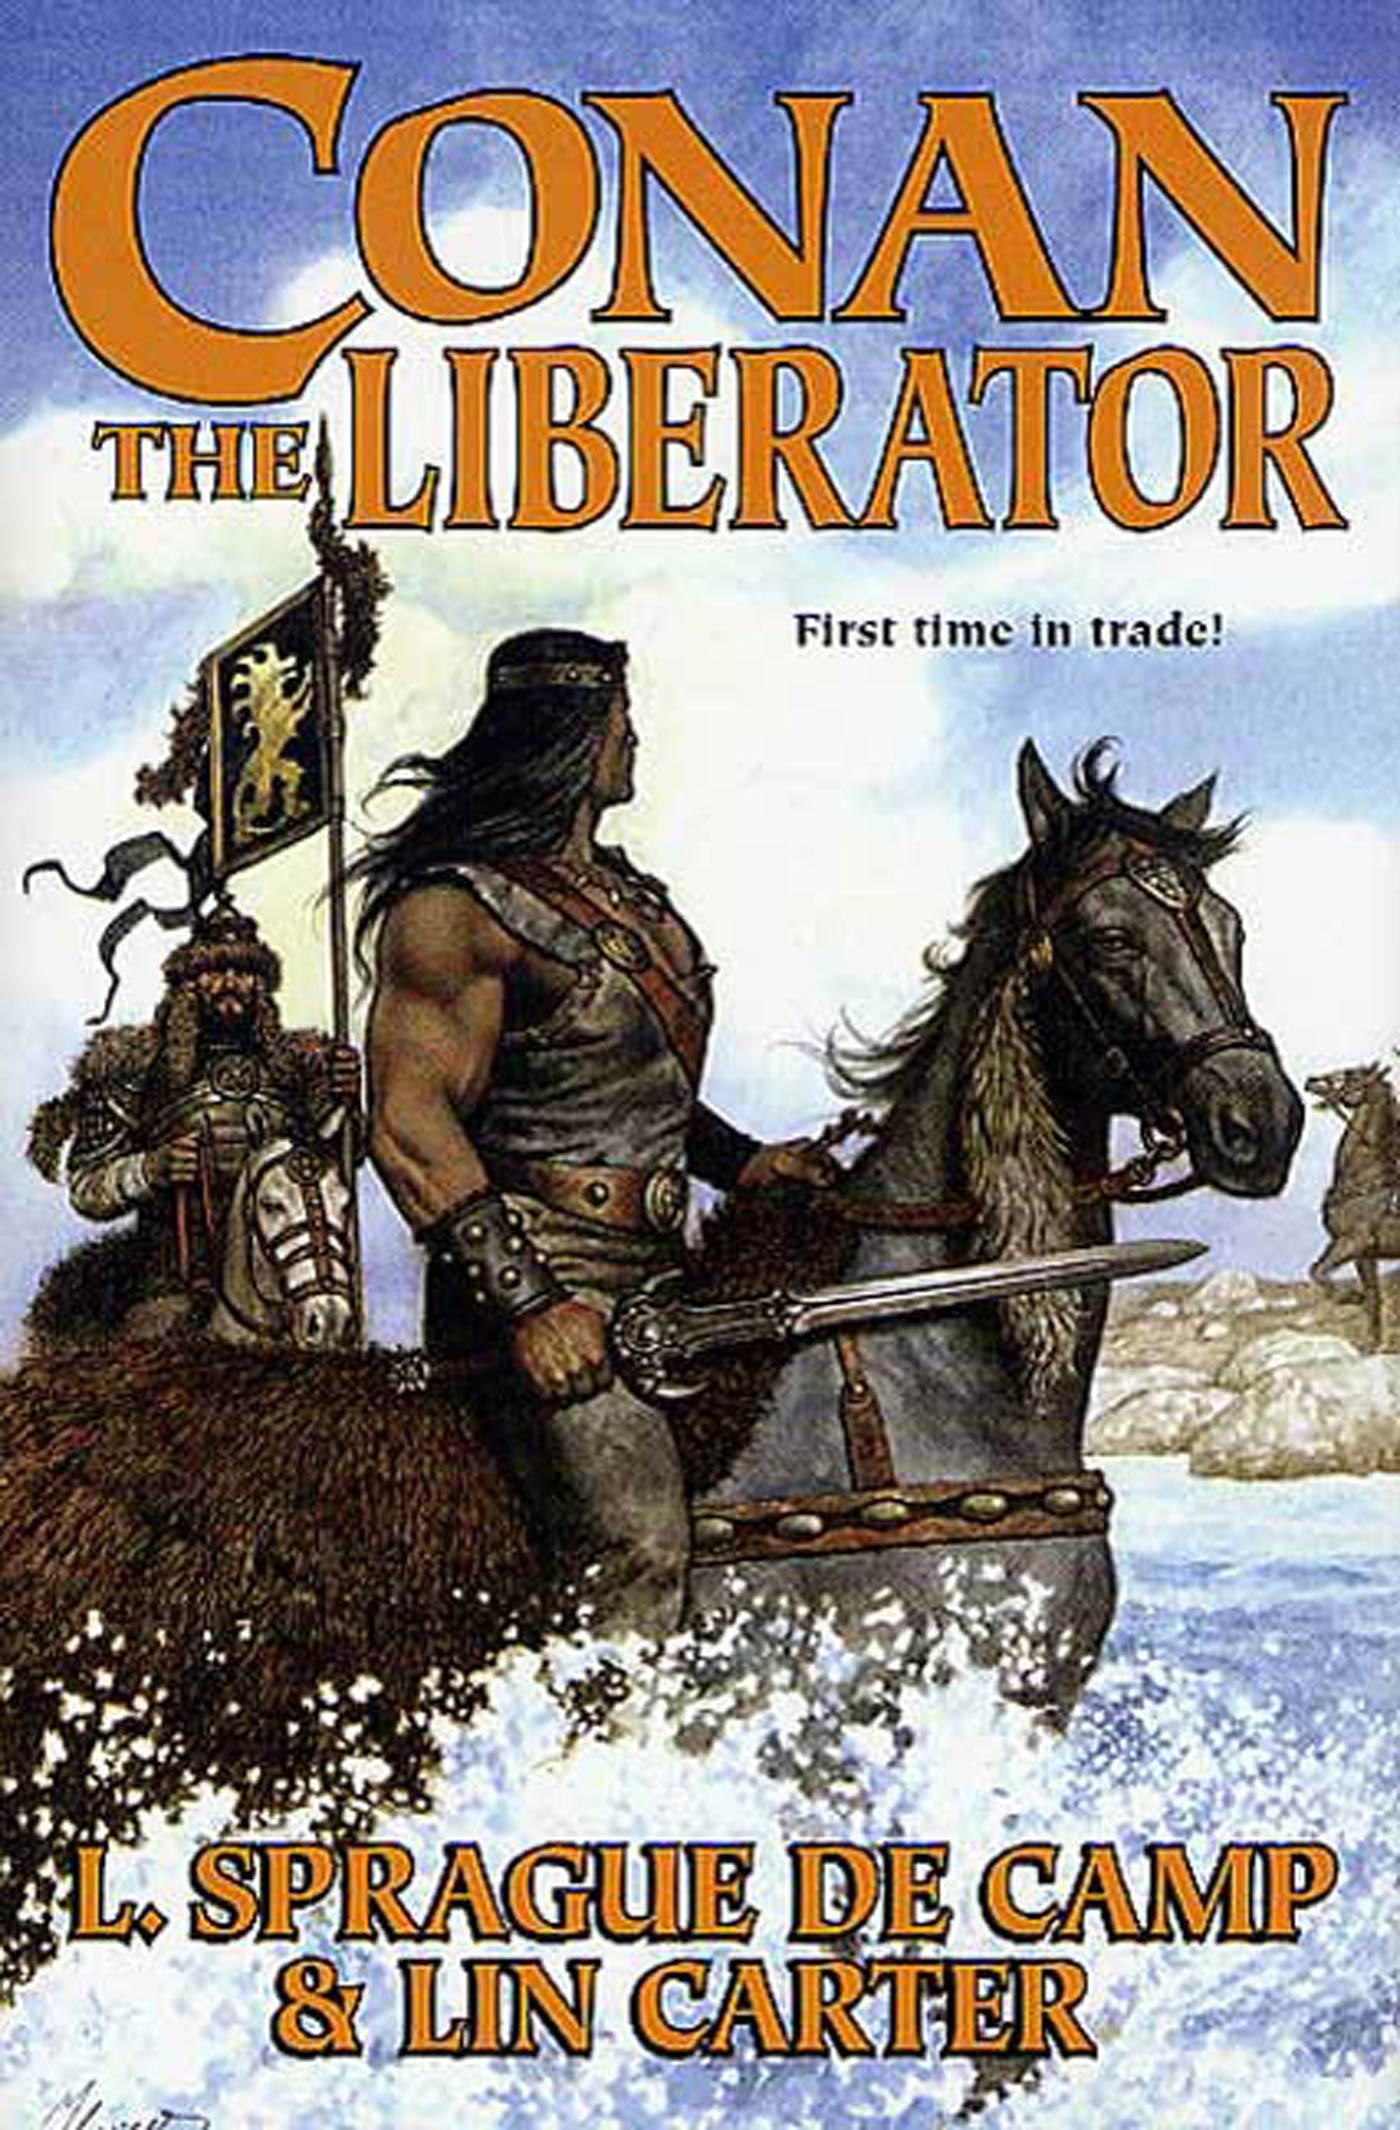 Conan The Liberator by L. Sprague de Camp, Lin Carter